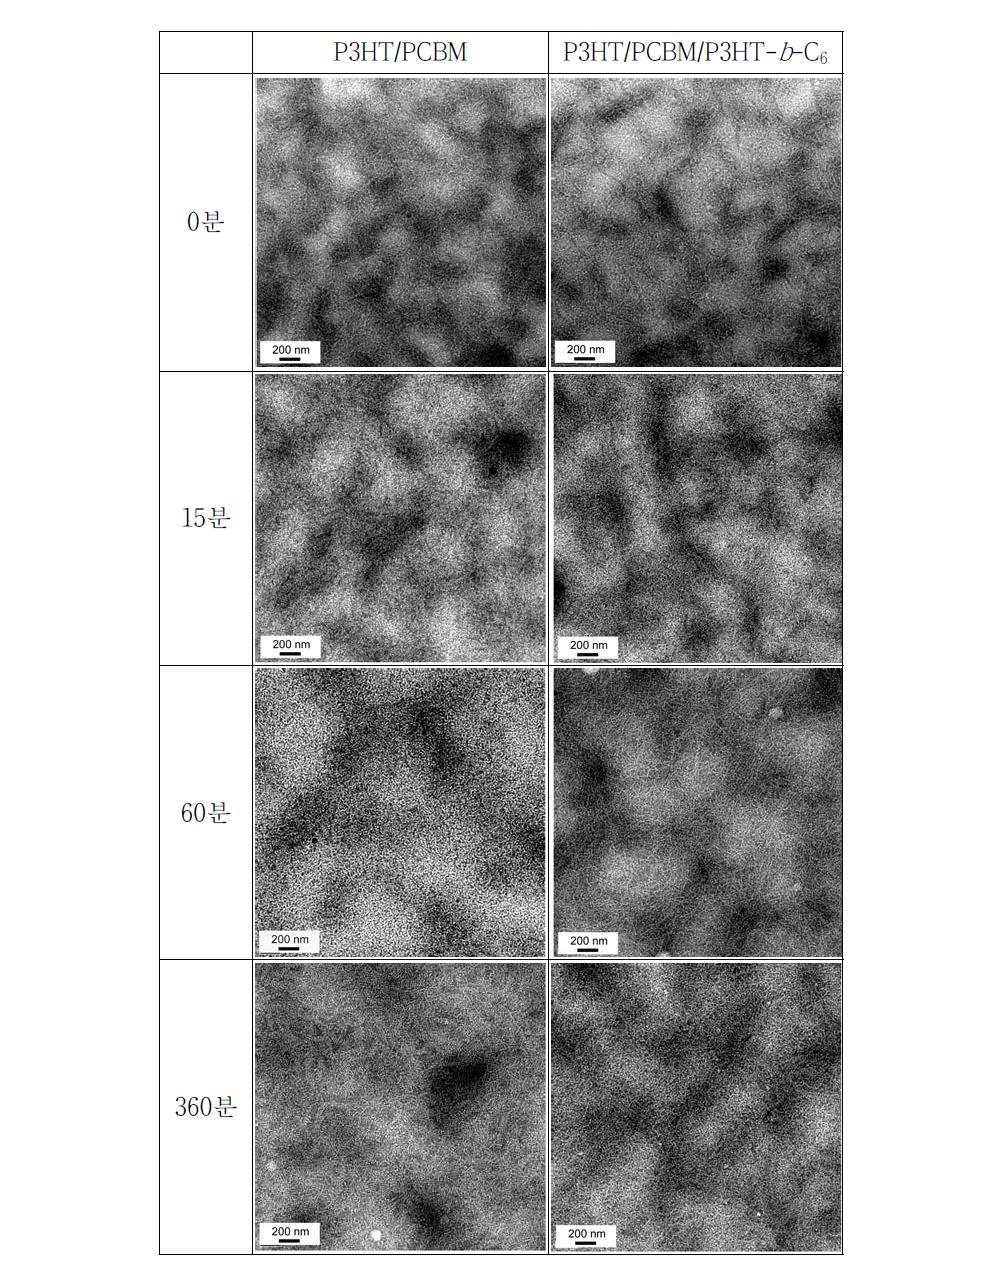 열처리 시간에 따른 P3HT/PCBM 블렌드 박막과 P3HT/PCBM/P3HT-b -C60 블렌드 박막(2.5 wt% P3HT-b -C60 블록공중합체 함유)의 전자 현미경 사진.